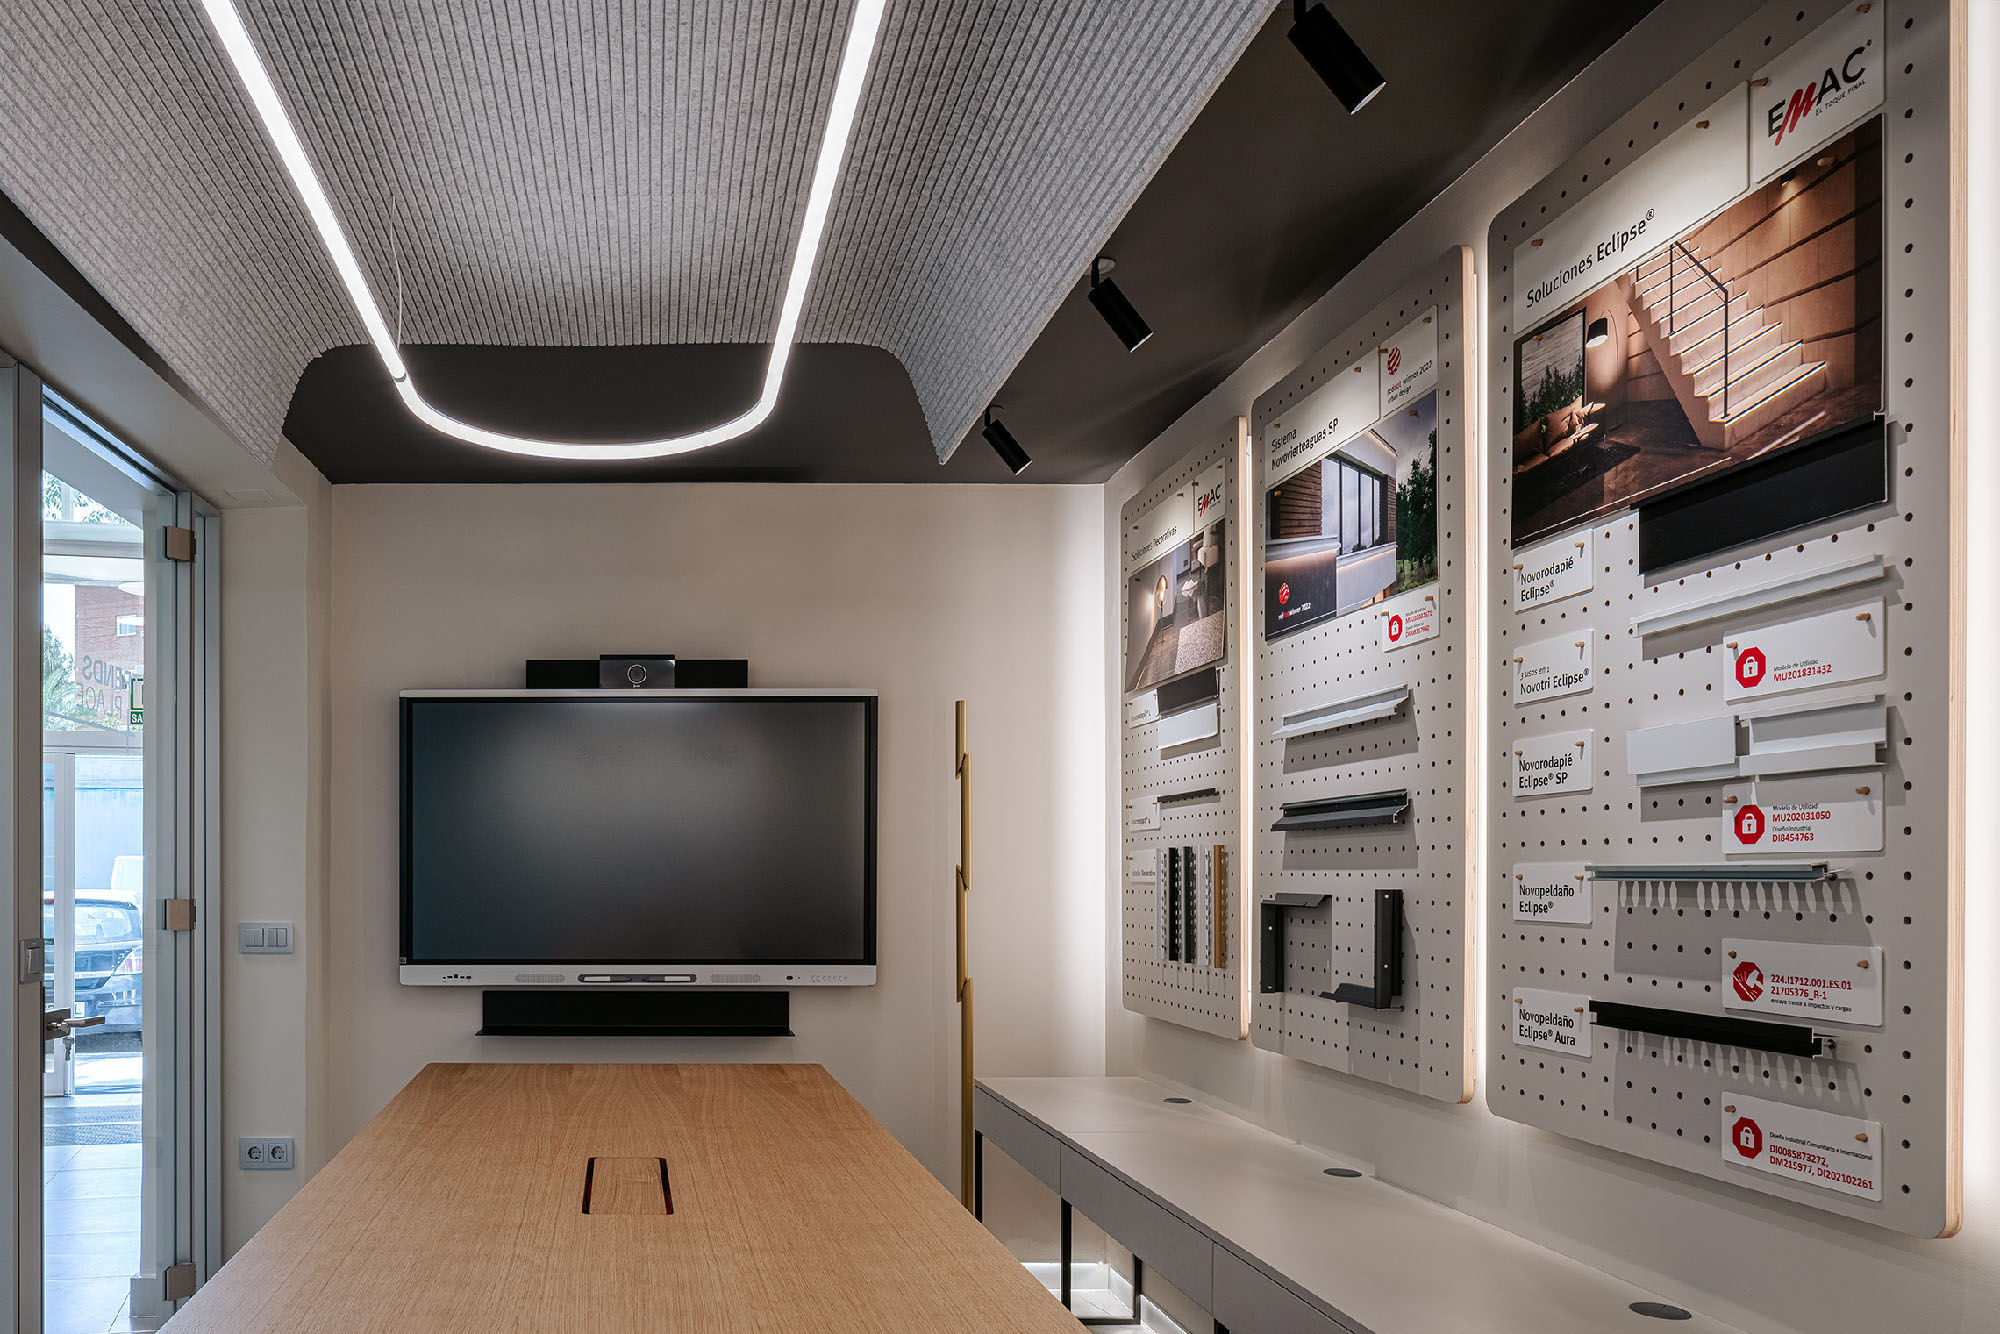 Proyecto de diseño interior. Showroom sala de reuniones y vídeo presentaciones para Trends Place Emac por Samaruc Estudio.